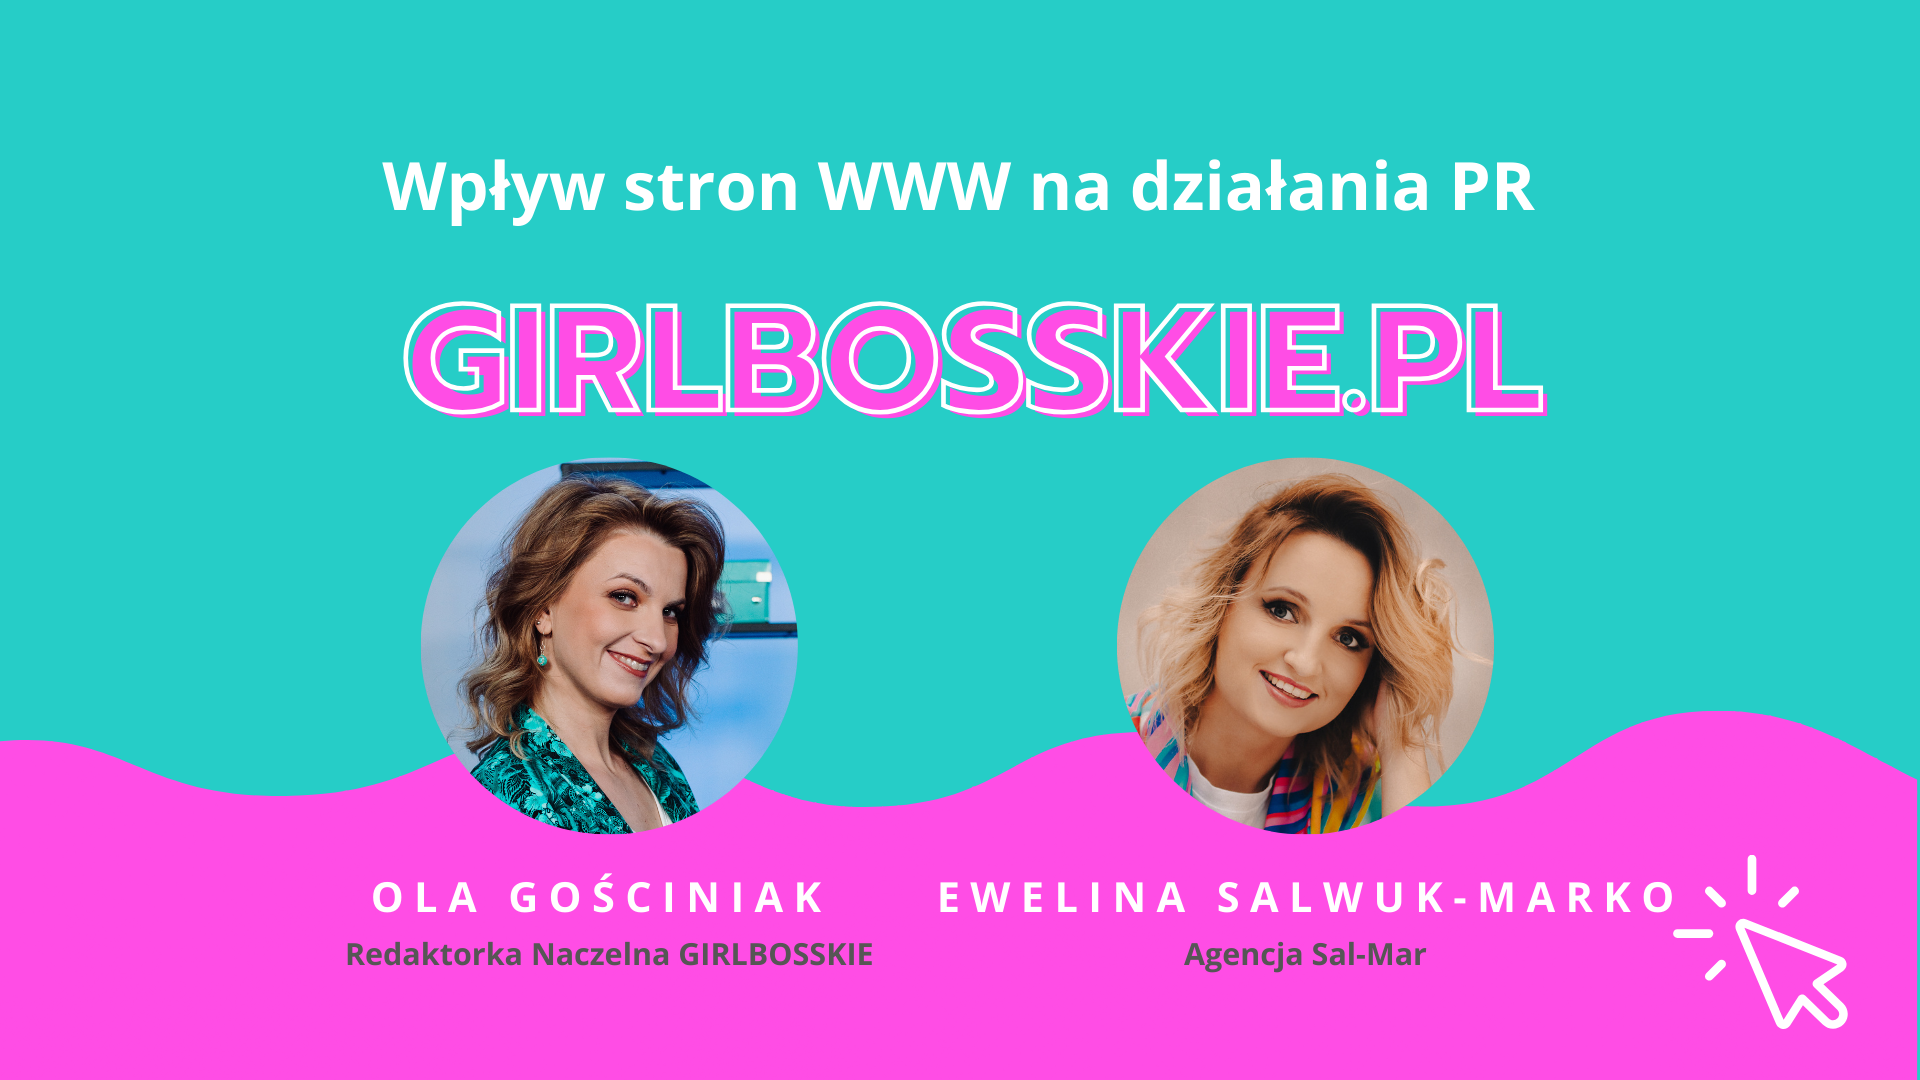 Wpływ stron WWW na działania PR – Ewelina Salwuk-Marko – Podcast #GIRLBOSS109